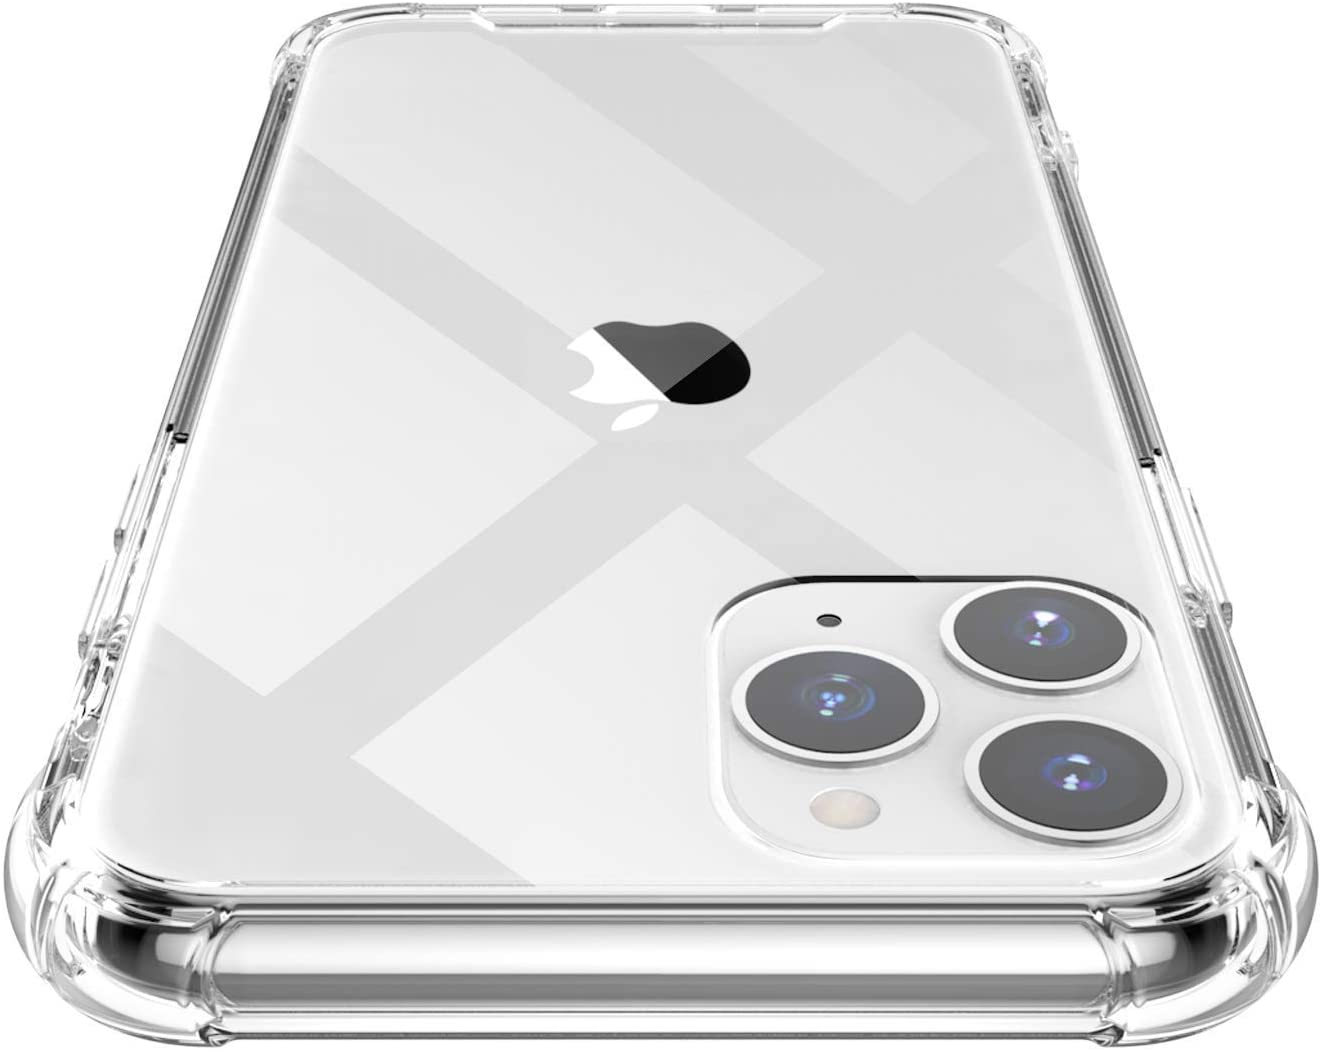 Carcasa Iphone 11 pro Transparente Antigolpe - SILICON AND CASES